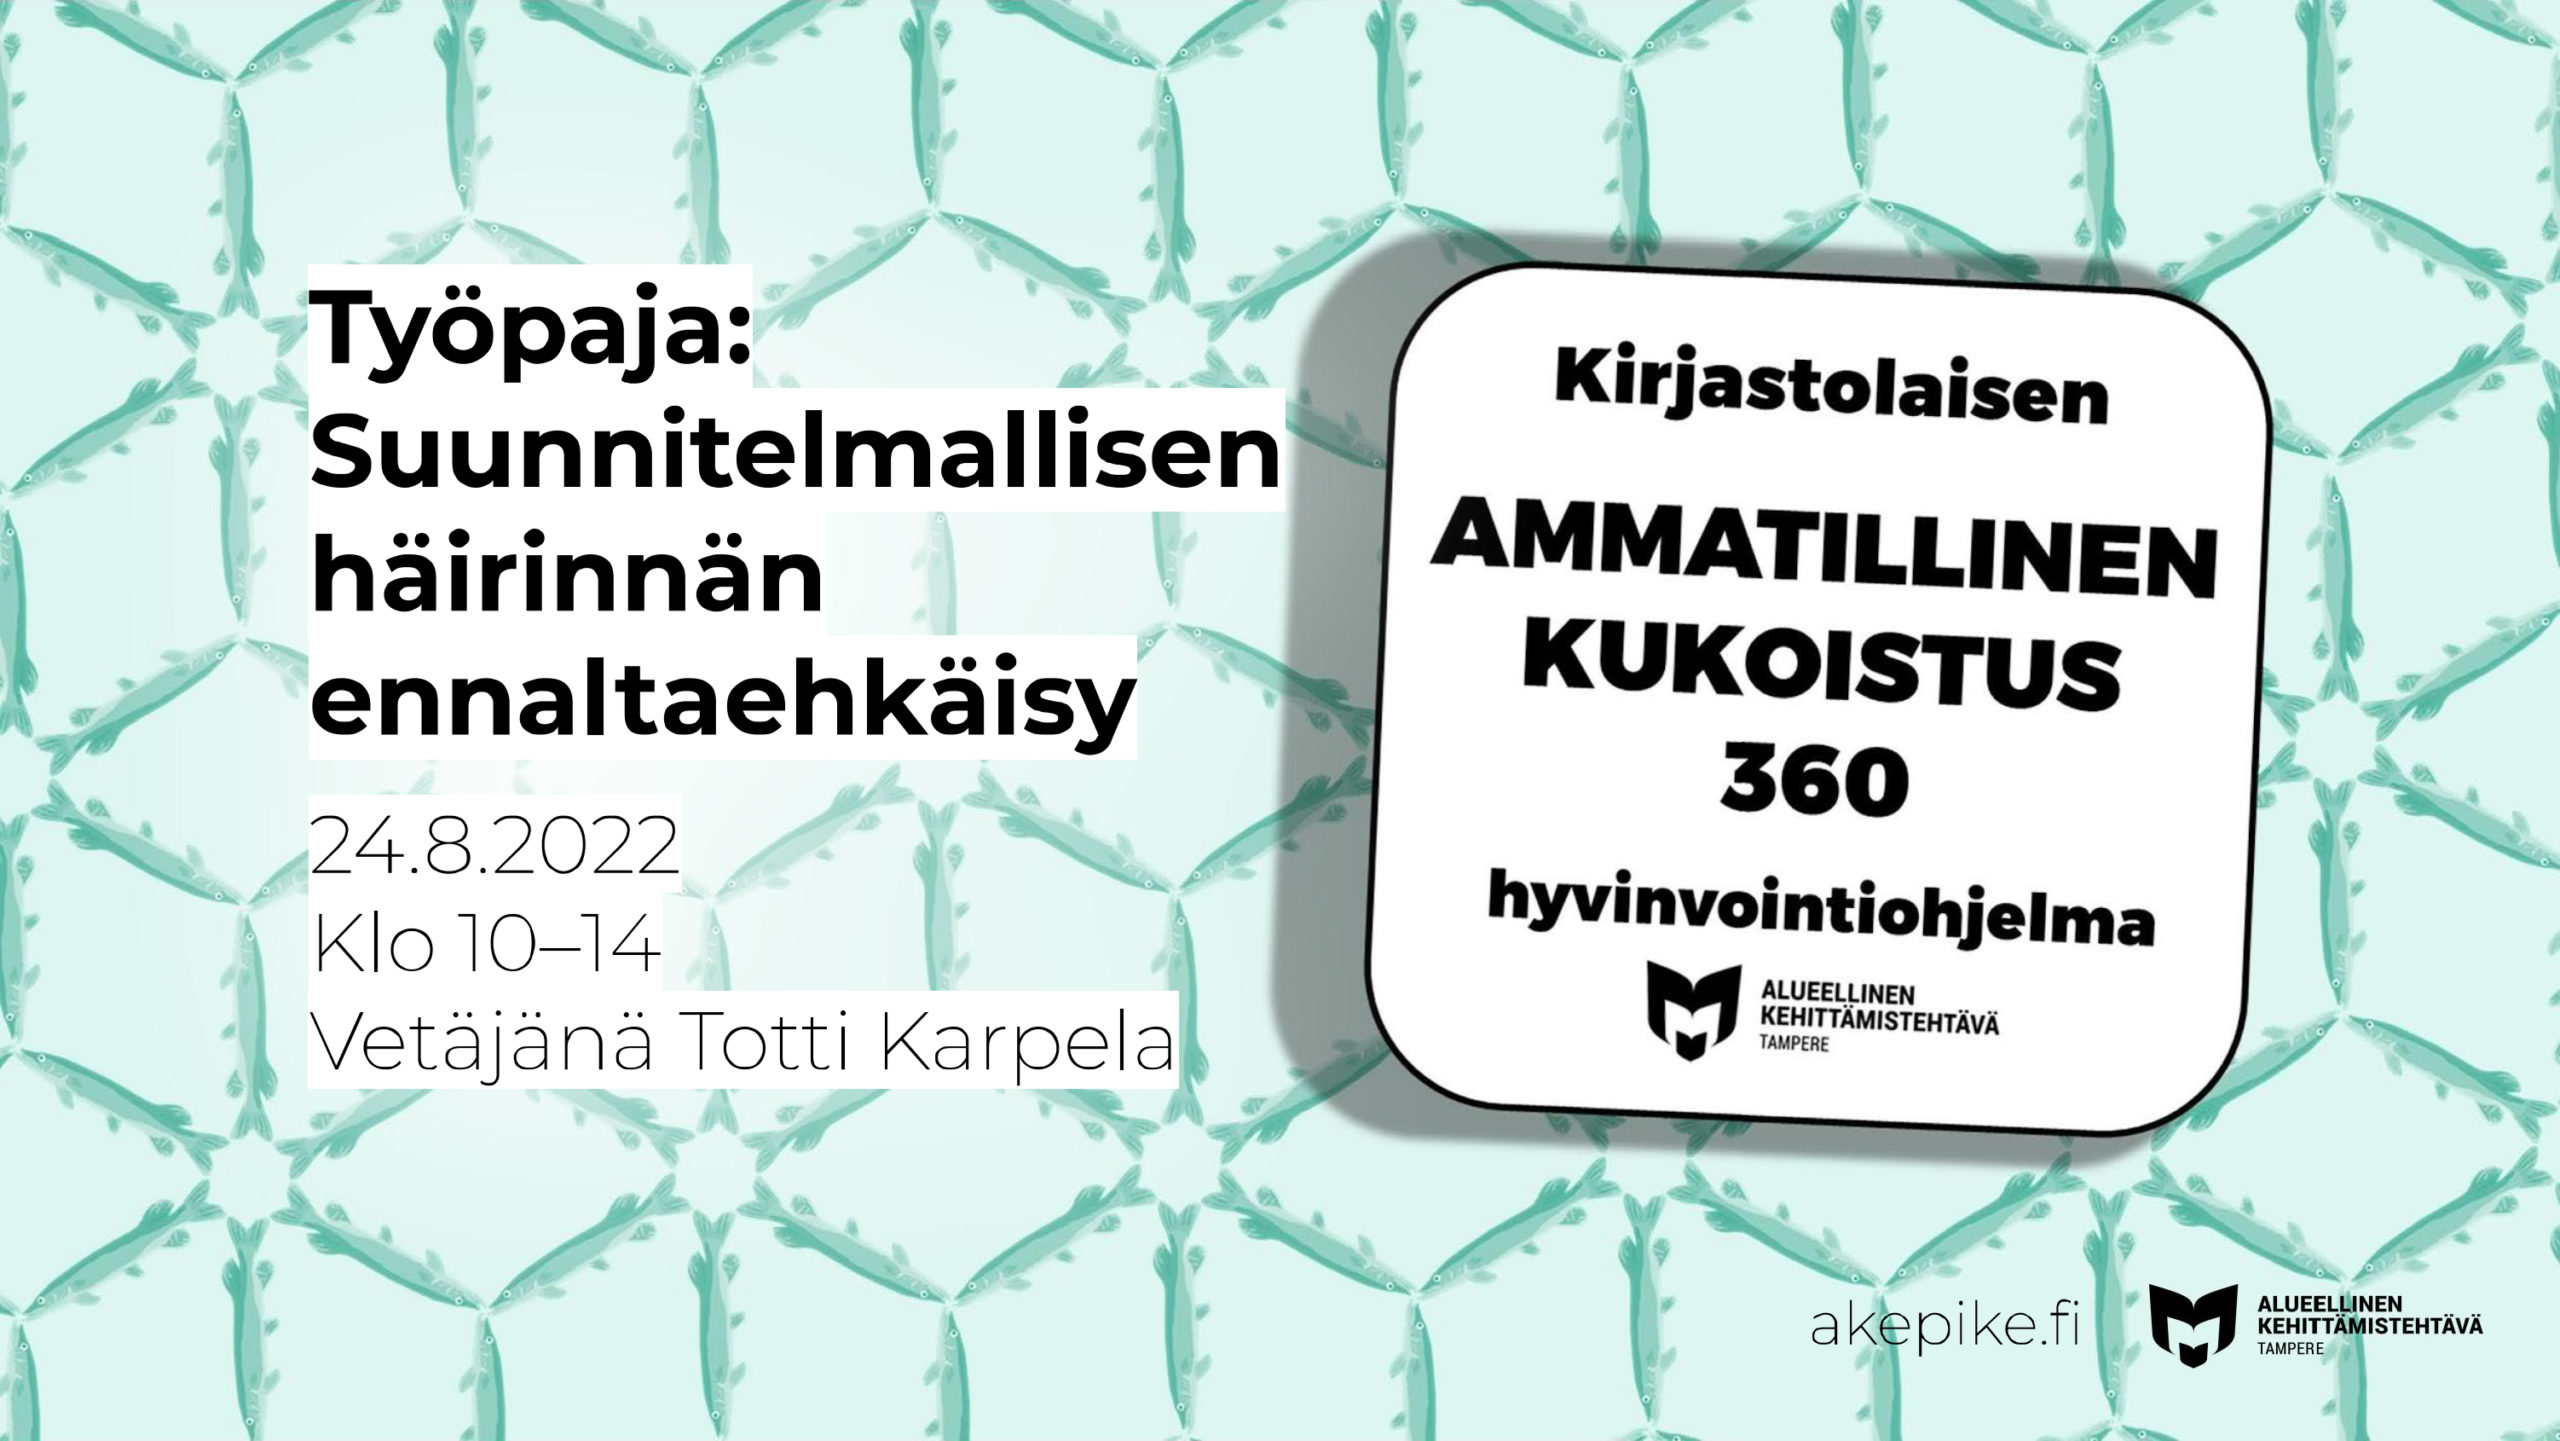 Kirjastolaisen hyvinvointiohjelman työpaja: Suunnitelmallisen häirinnän ennaltaehkäisy 24.8.2022